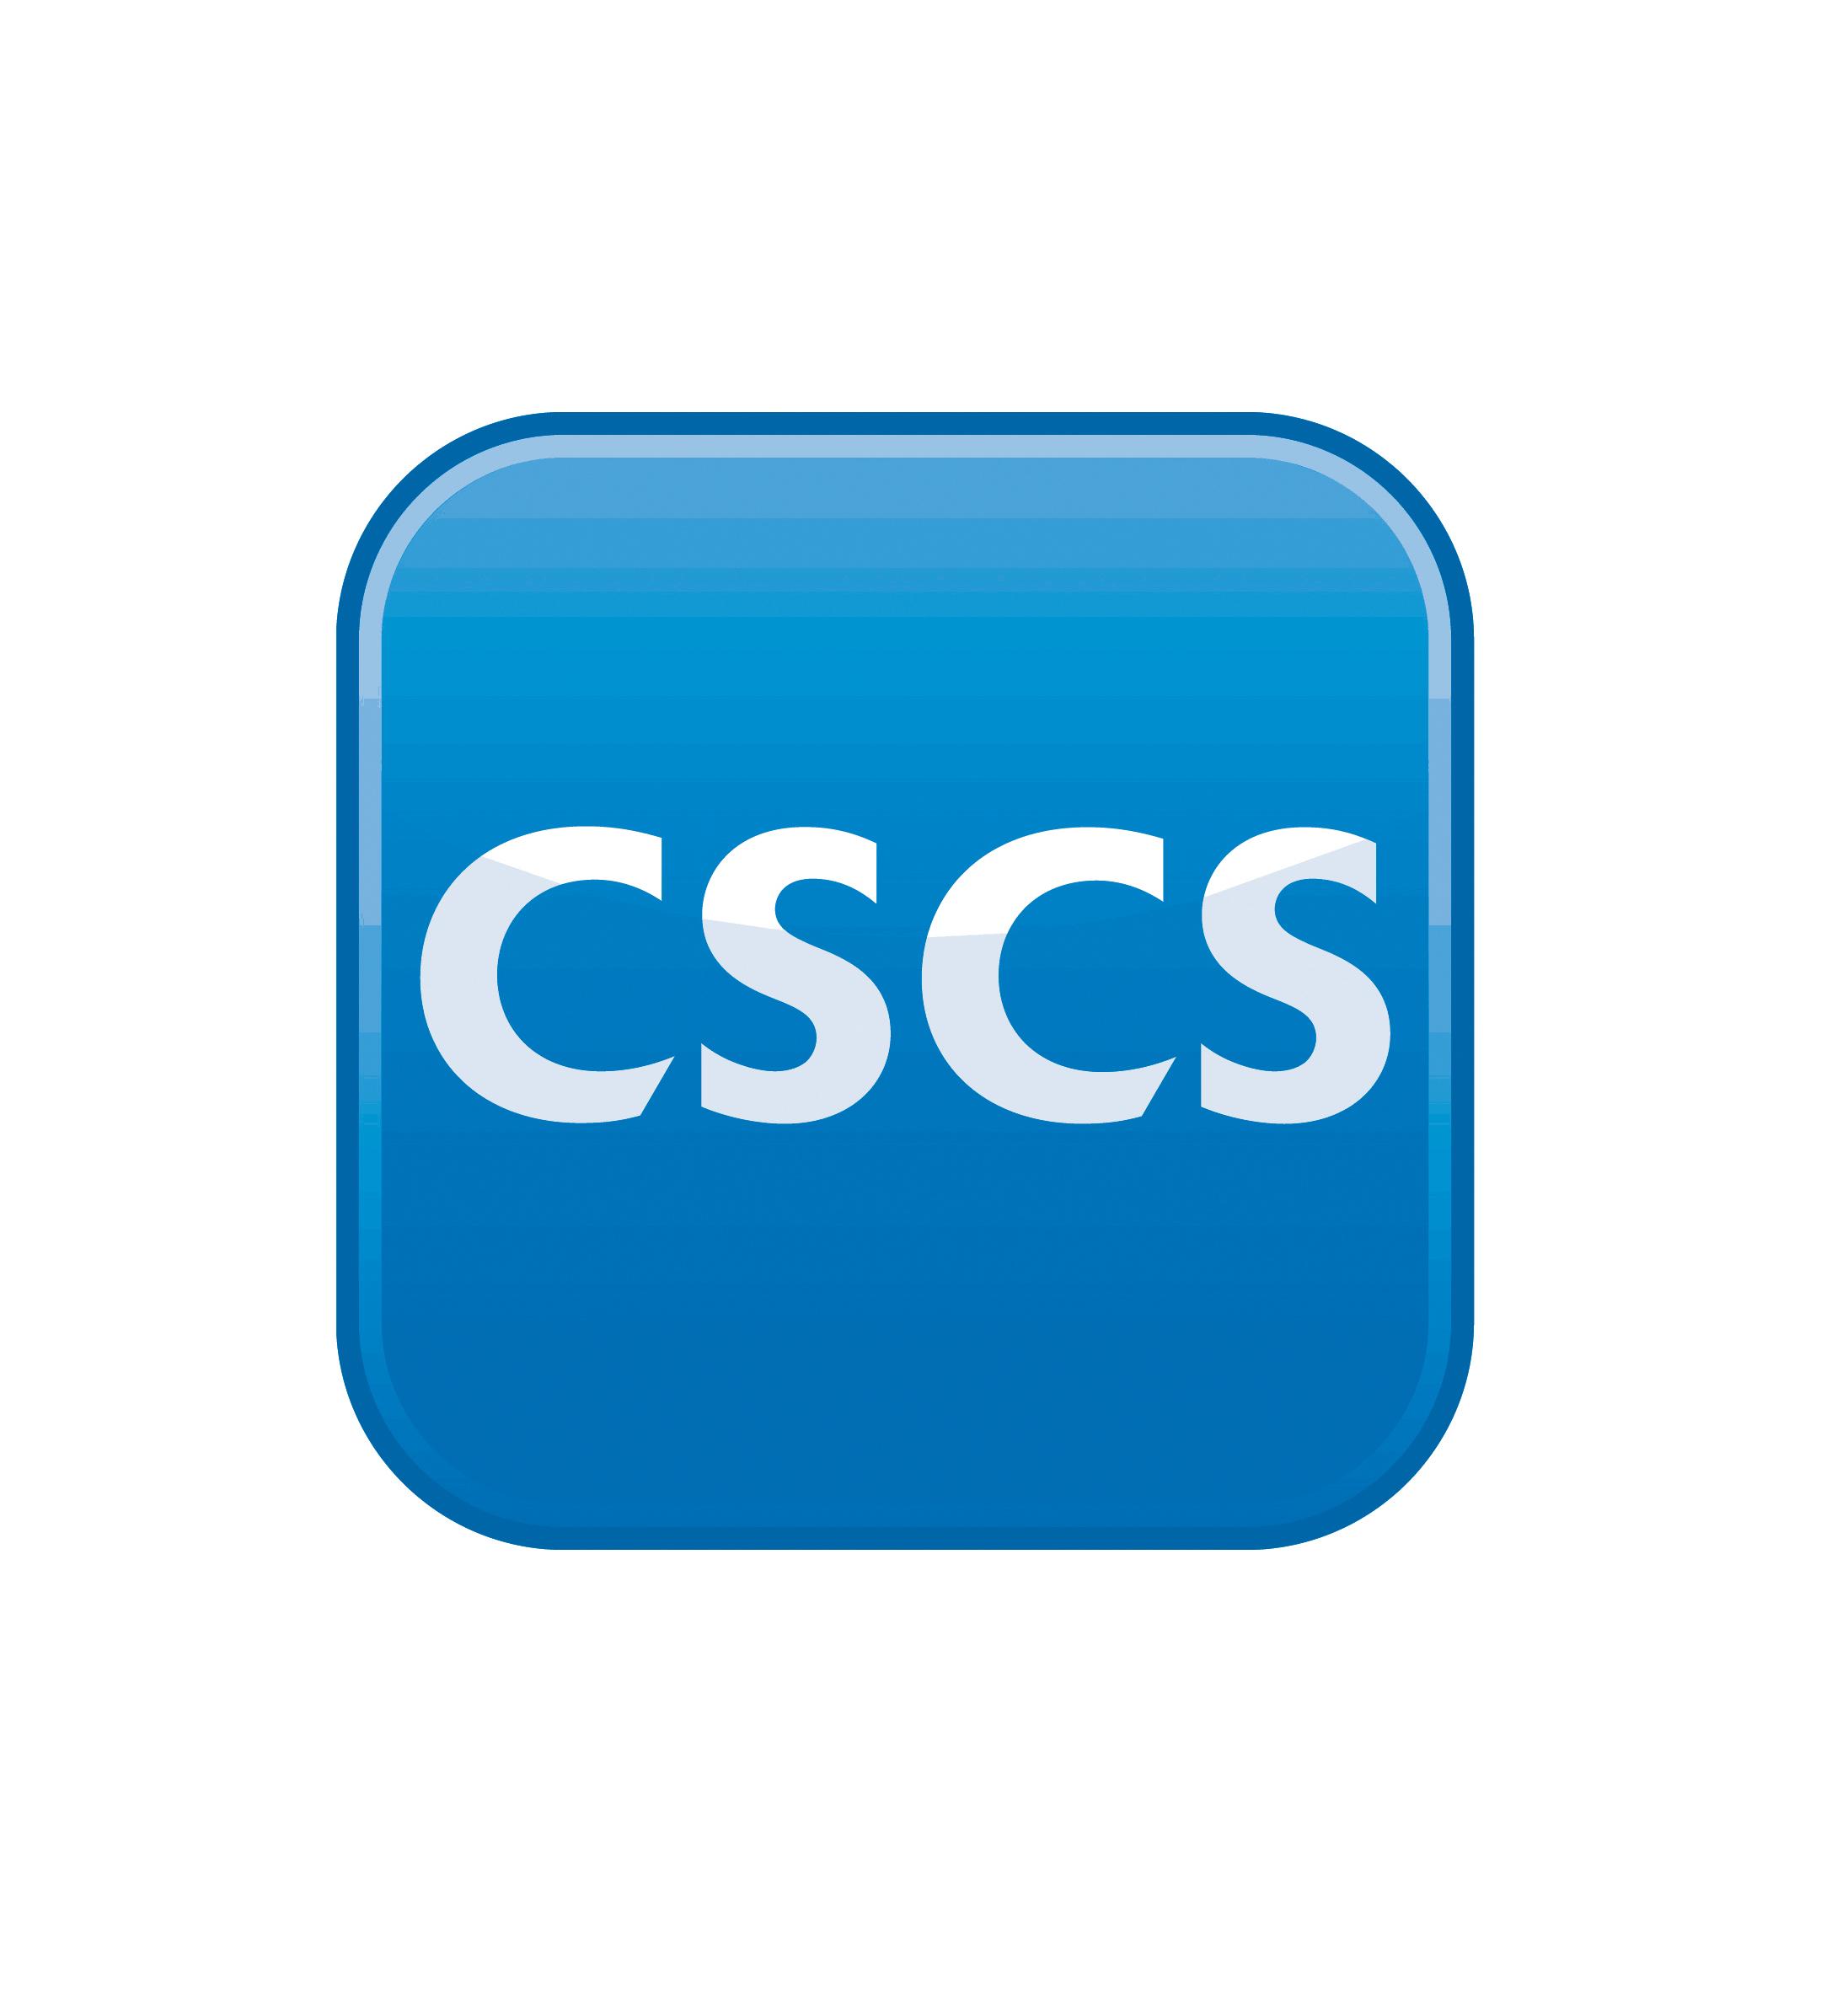 Cscs logo new cmyk